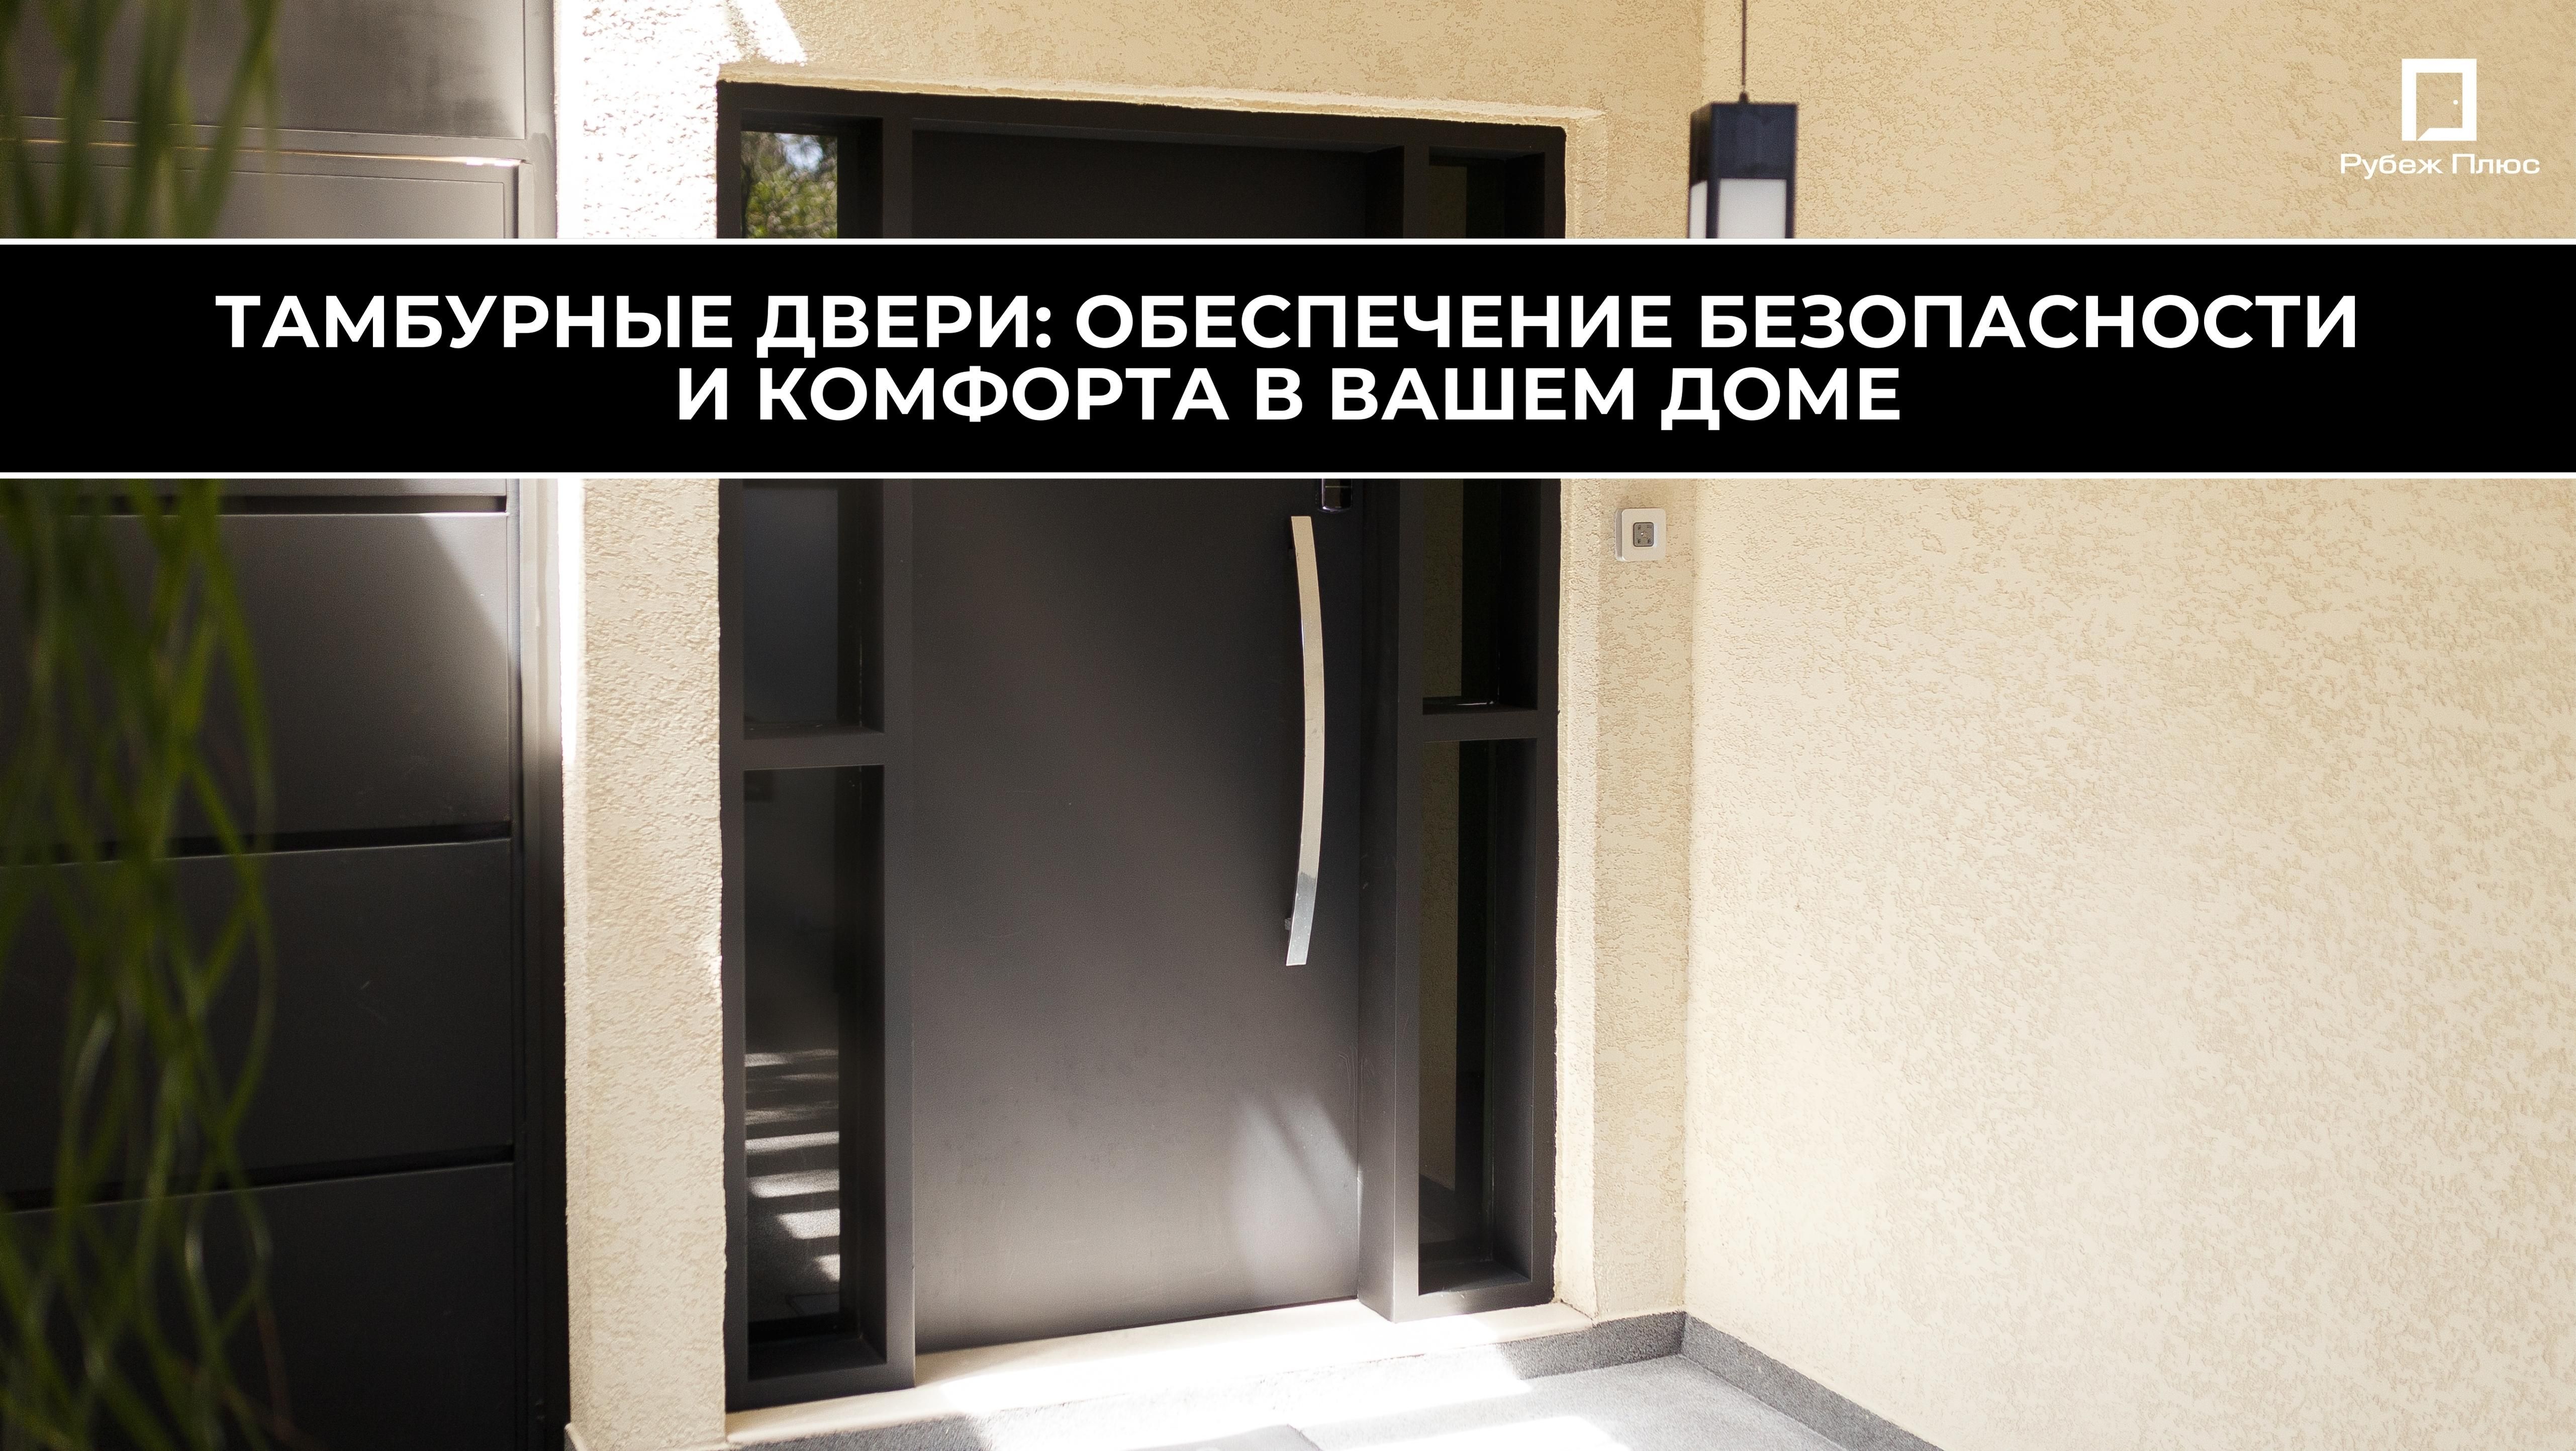 Тамбурные двери: обеспечение безопасности и комфорта в вашем доме